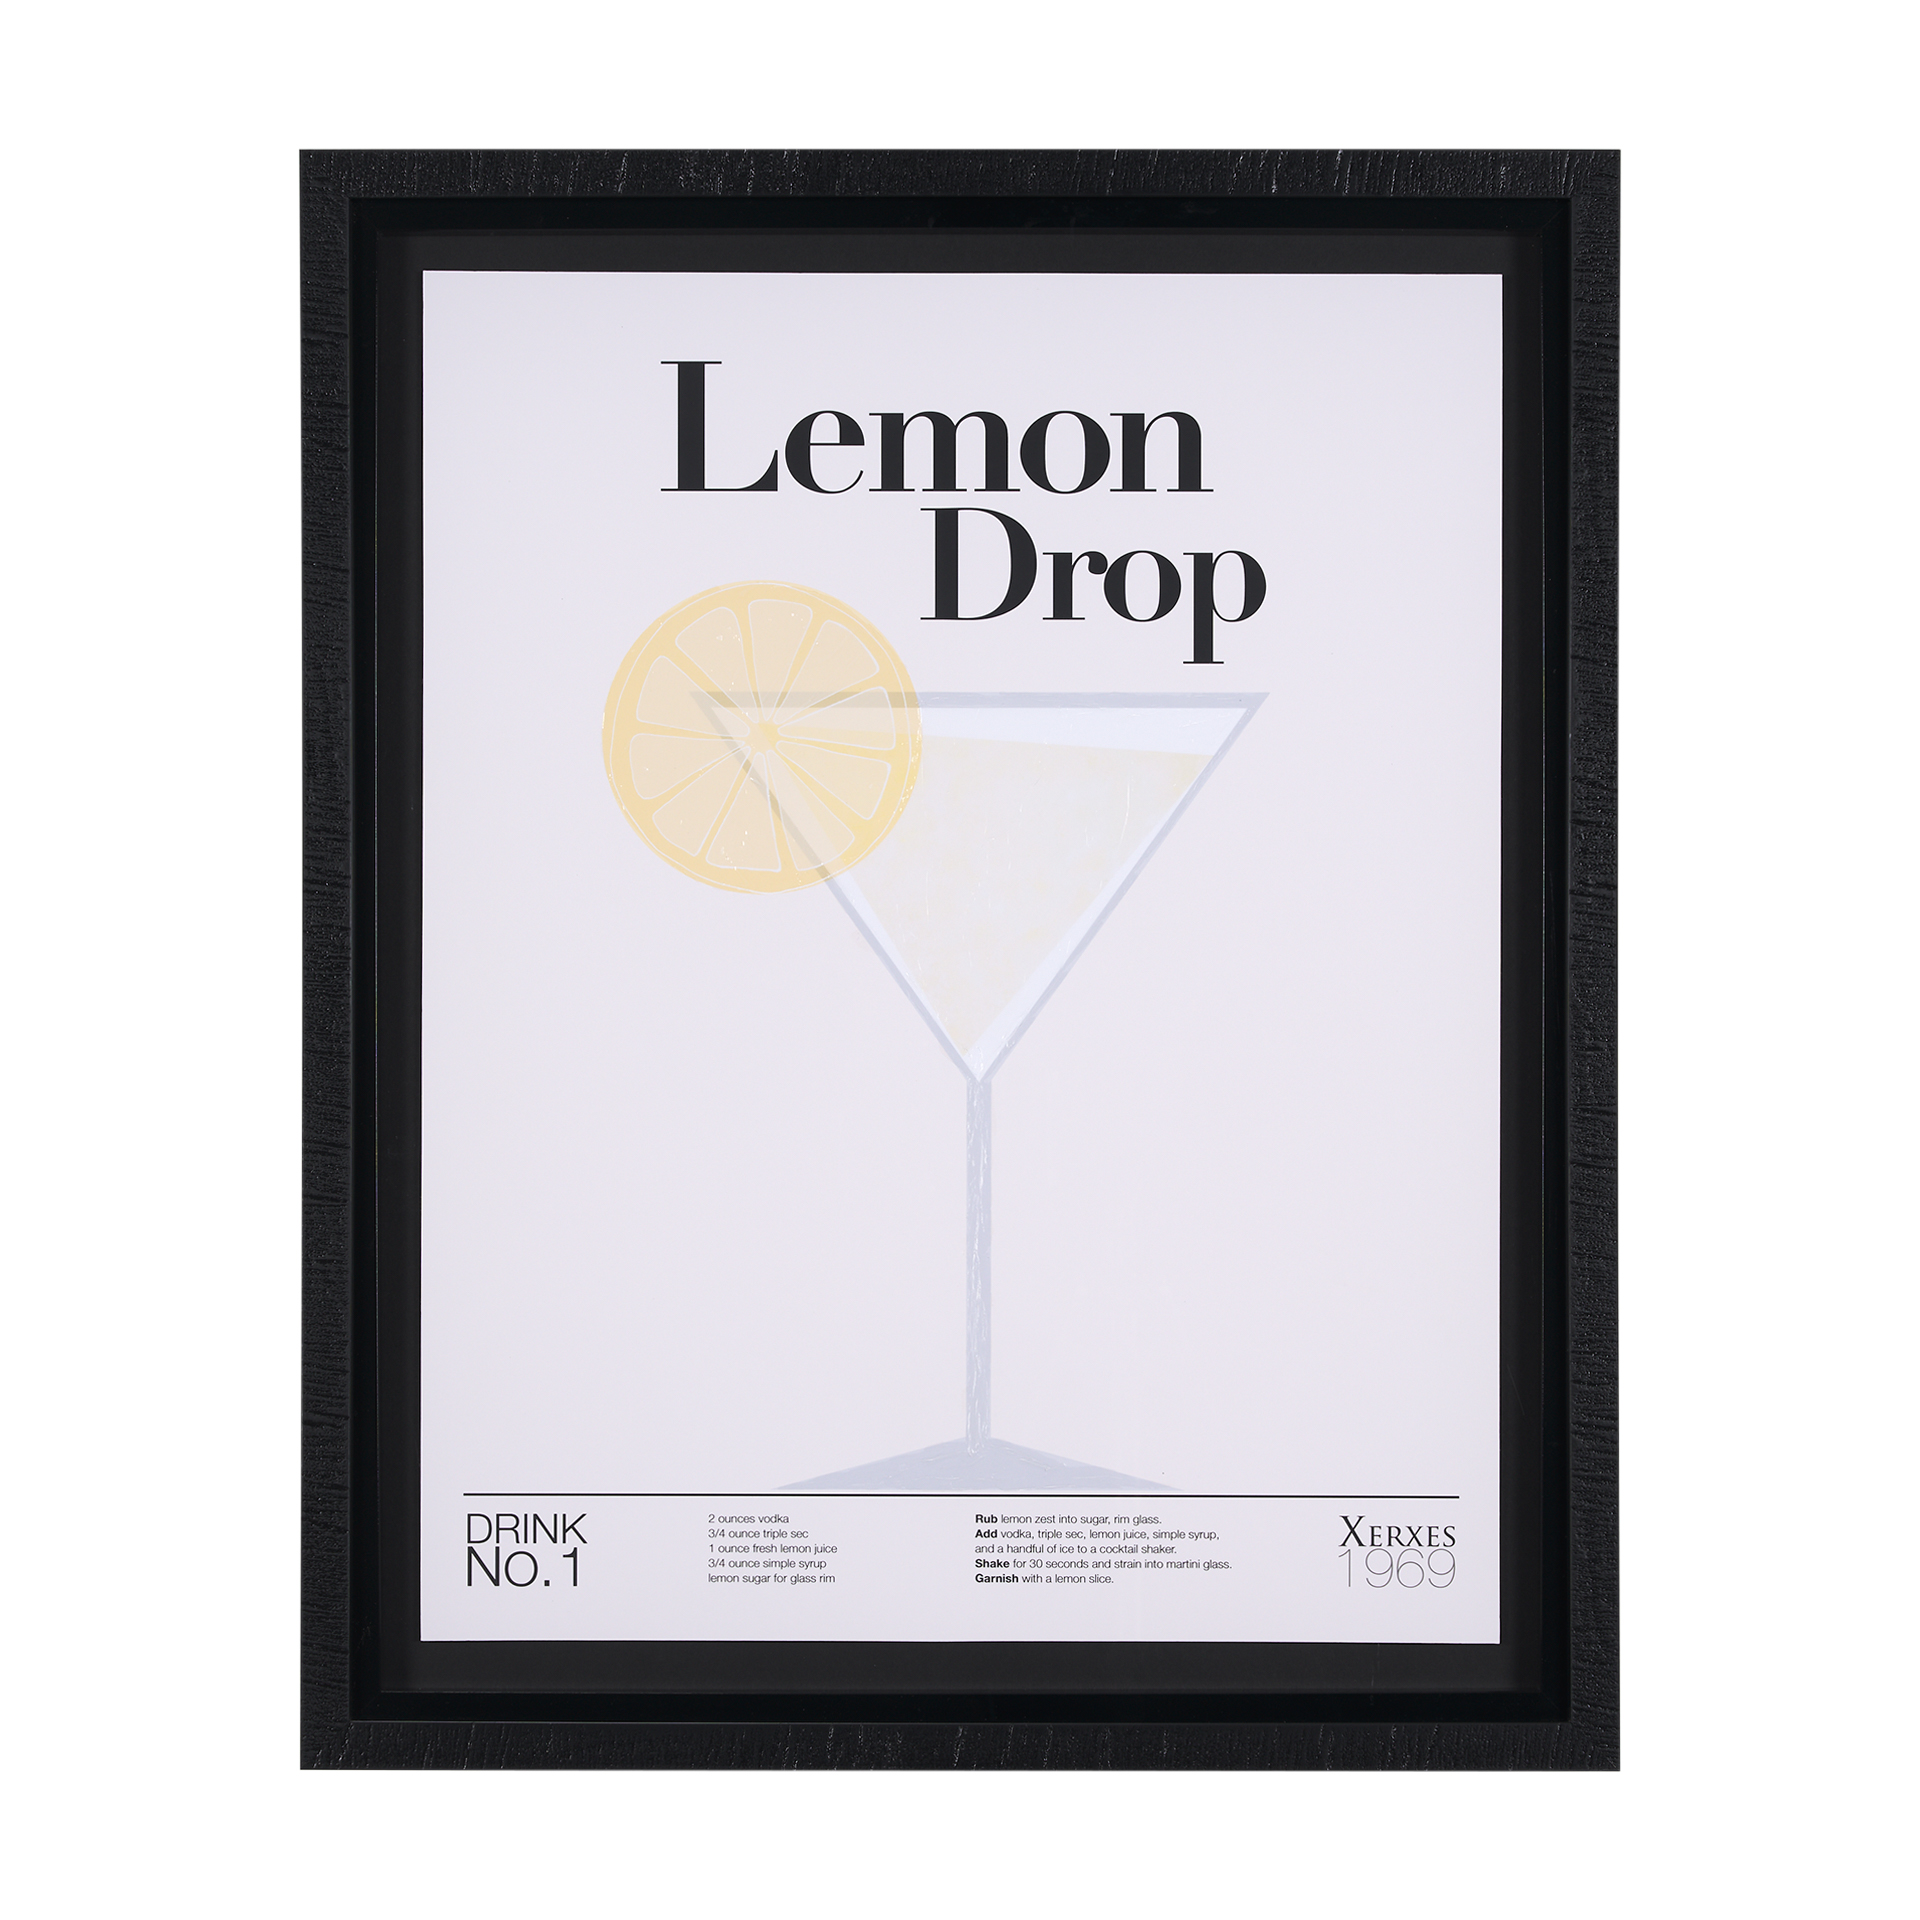 Lemon Drop (26 x 32)